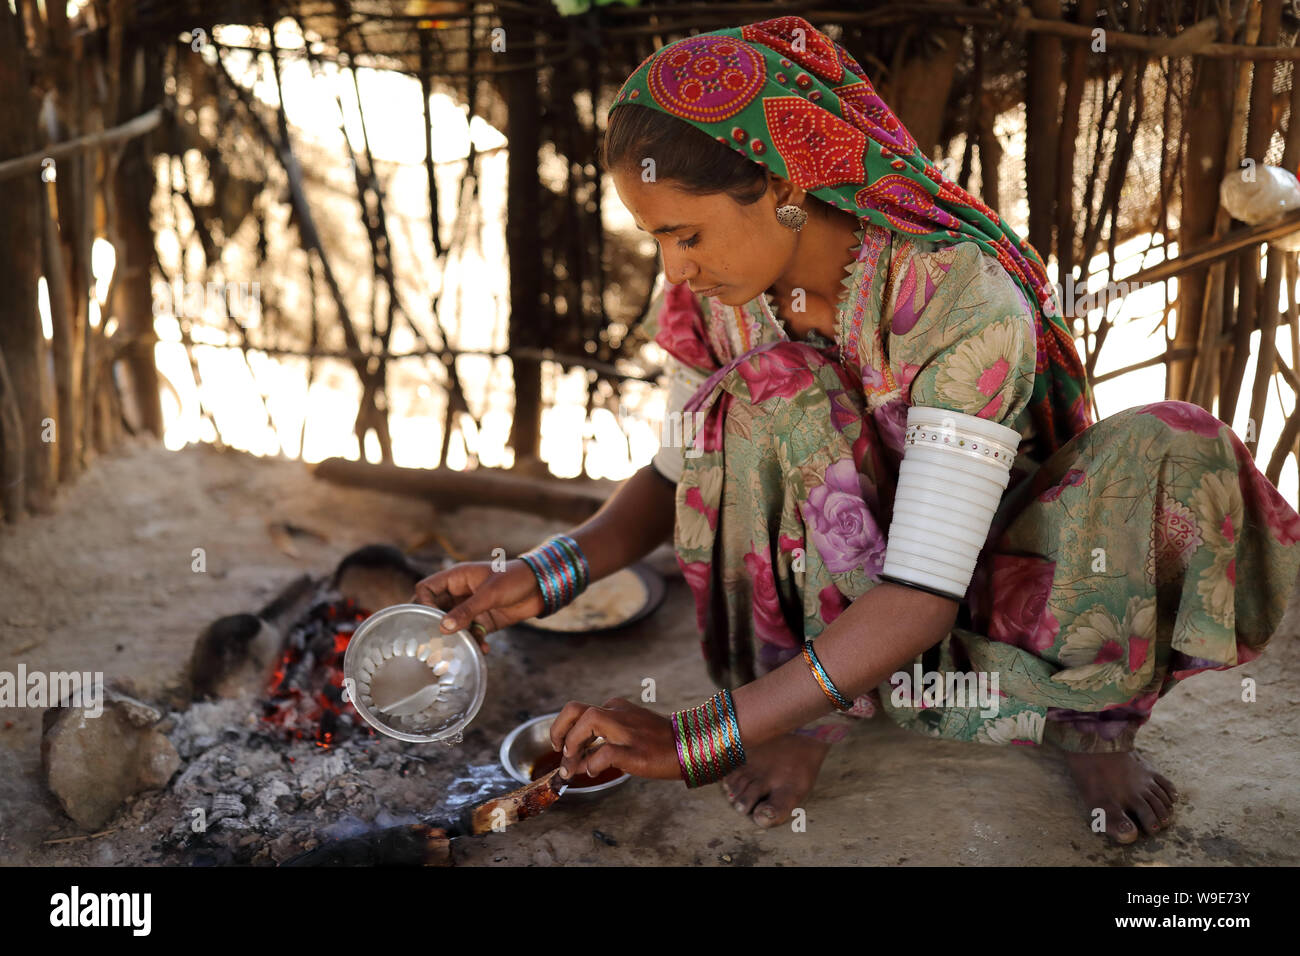 Femme Tribal dans un village rural dans le district de Kutch, Gujarat. Le Kutch région est bien connue pour son la vie tribale et la culture traditionnelle. Banque D'Images